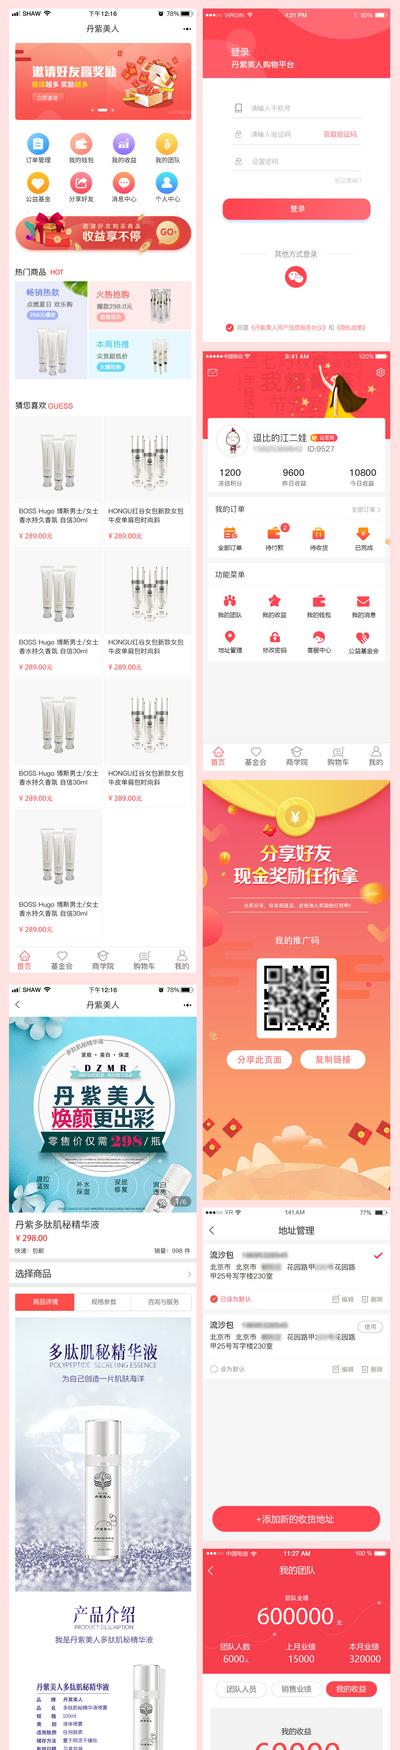 南门网 UI设计 app 界面设计 化妆品 小程序 商城